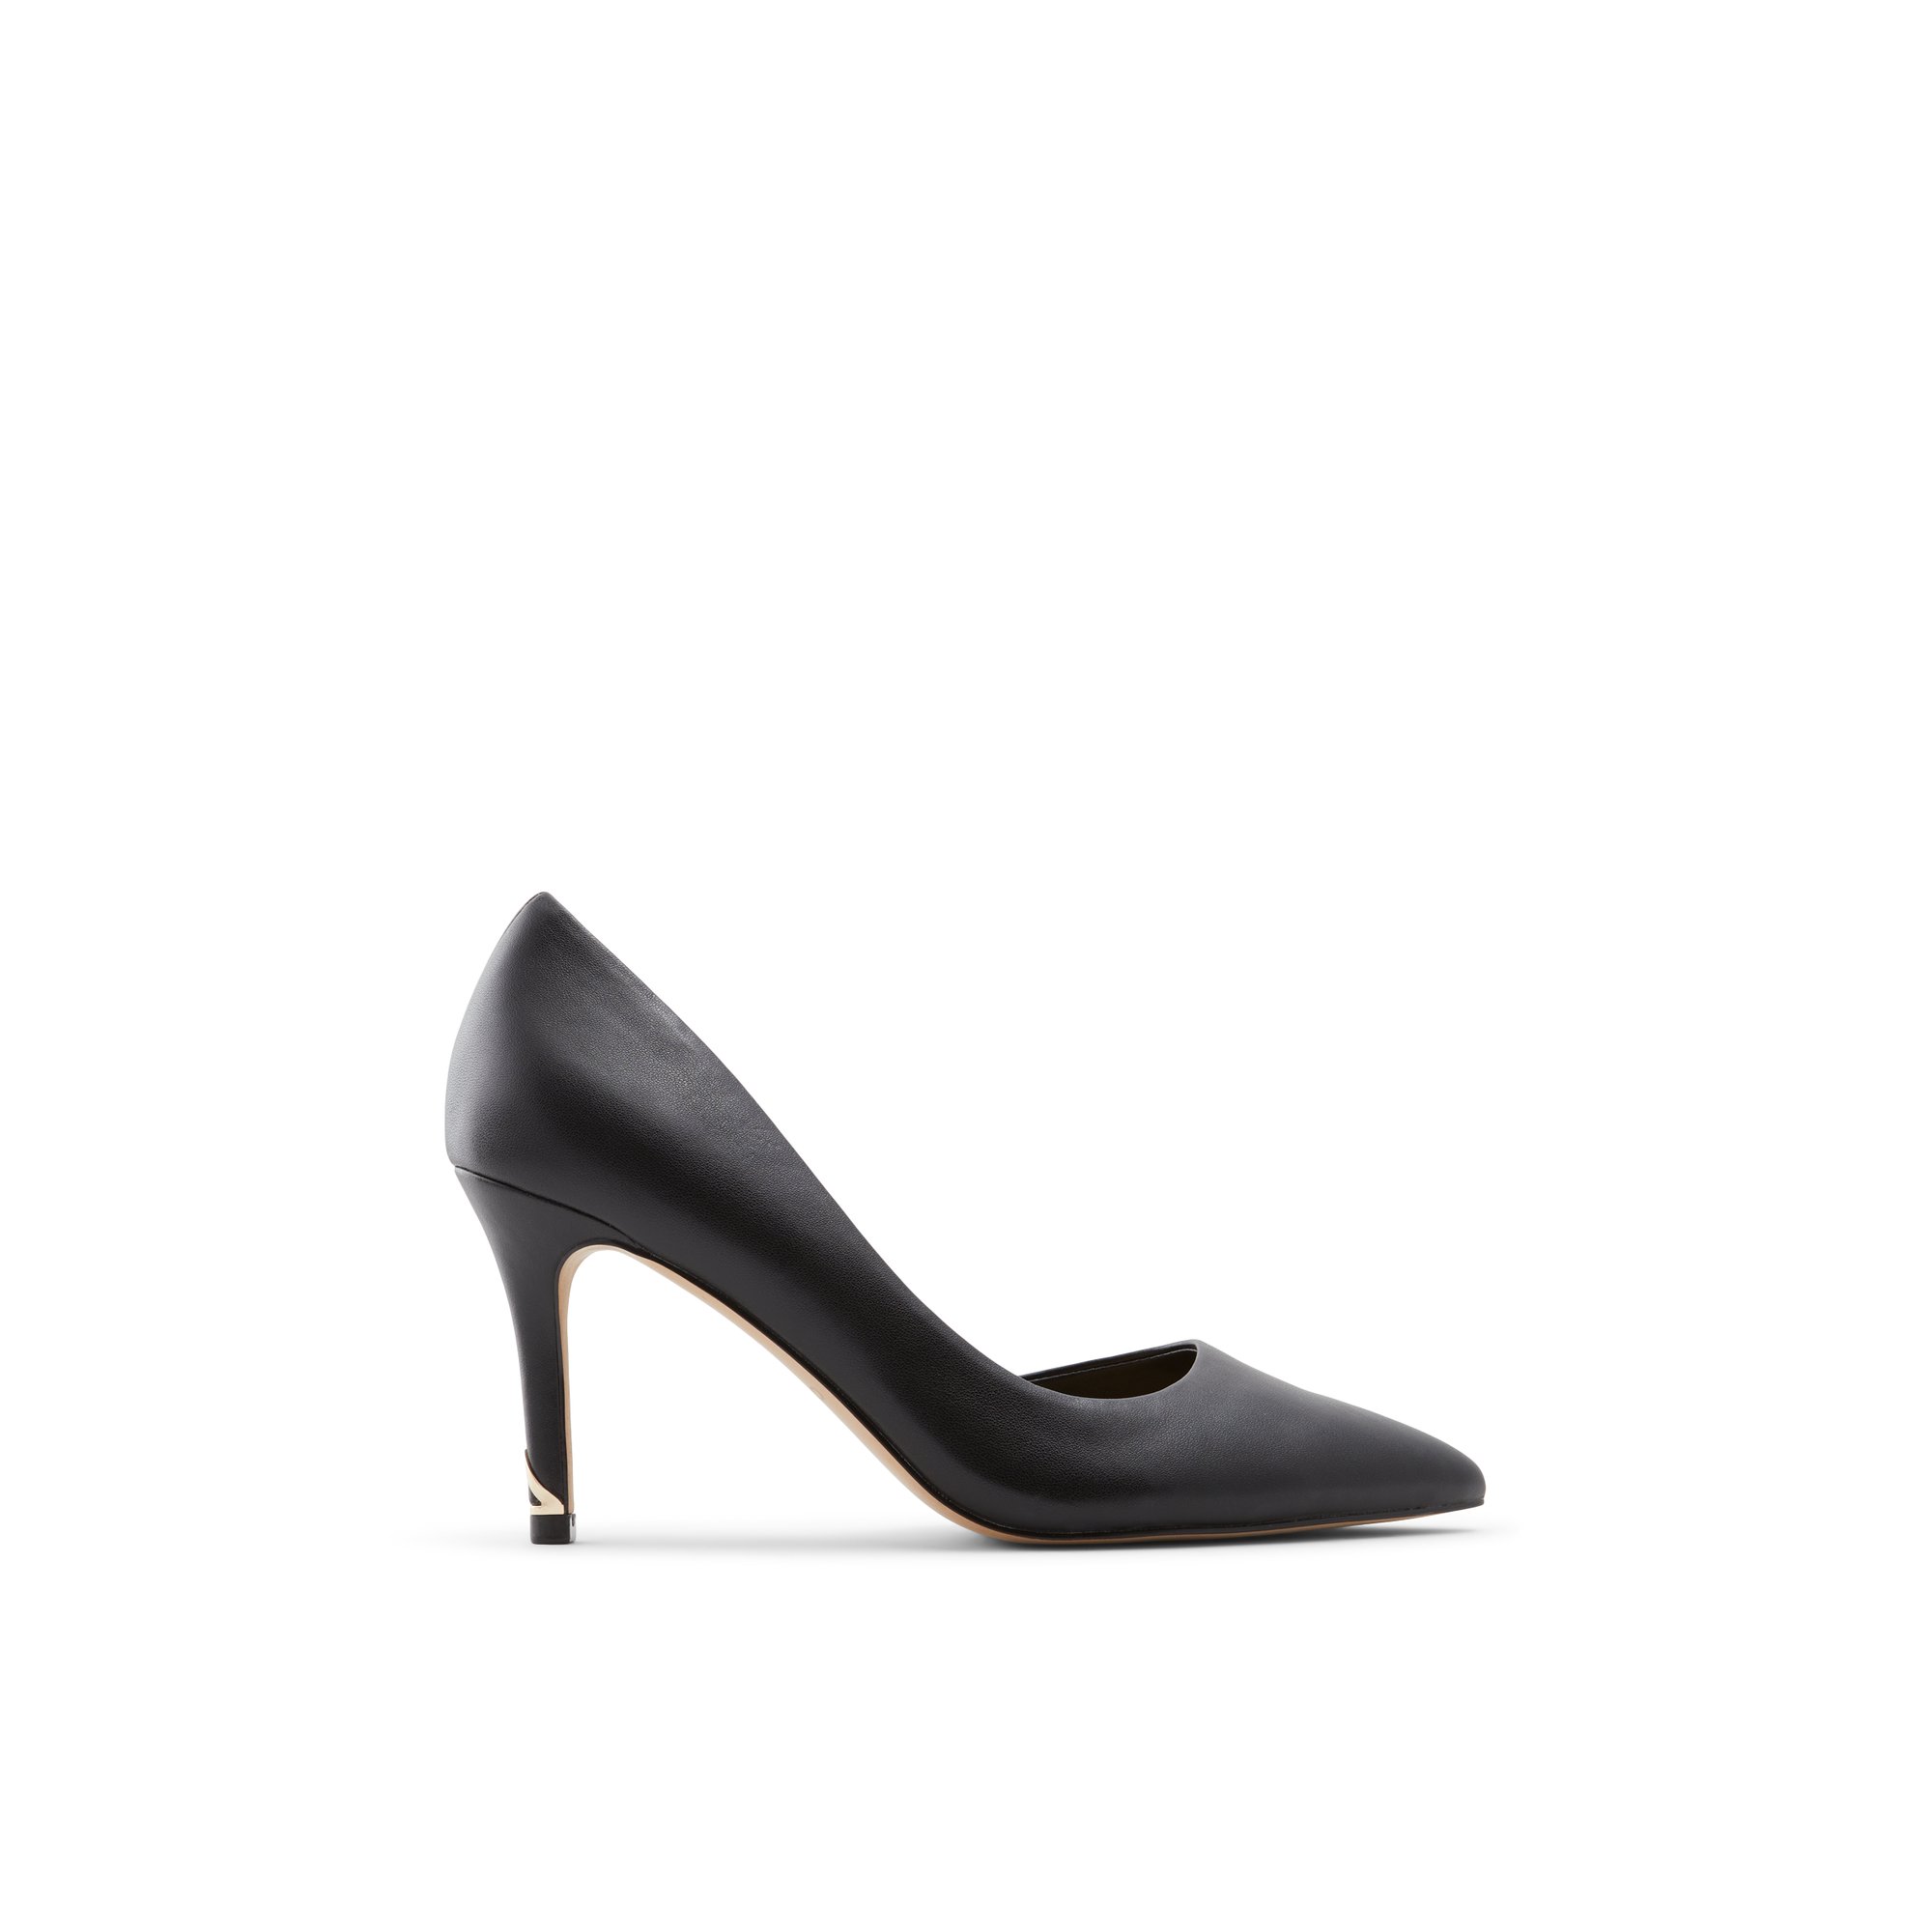 ALDO Vralg - Women's High Heel - Black